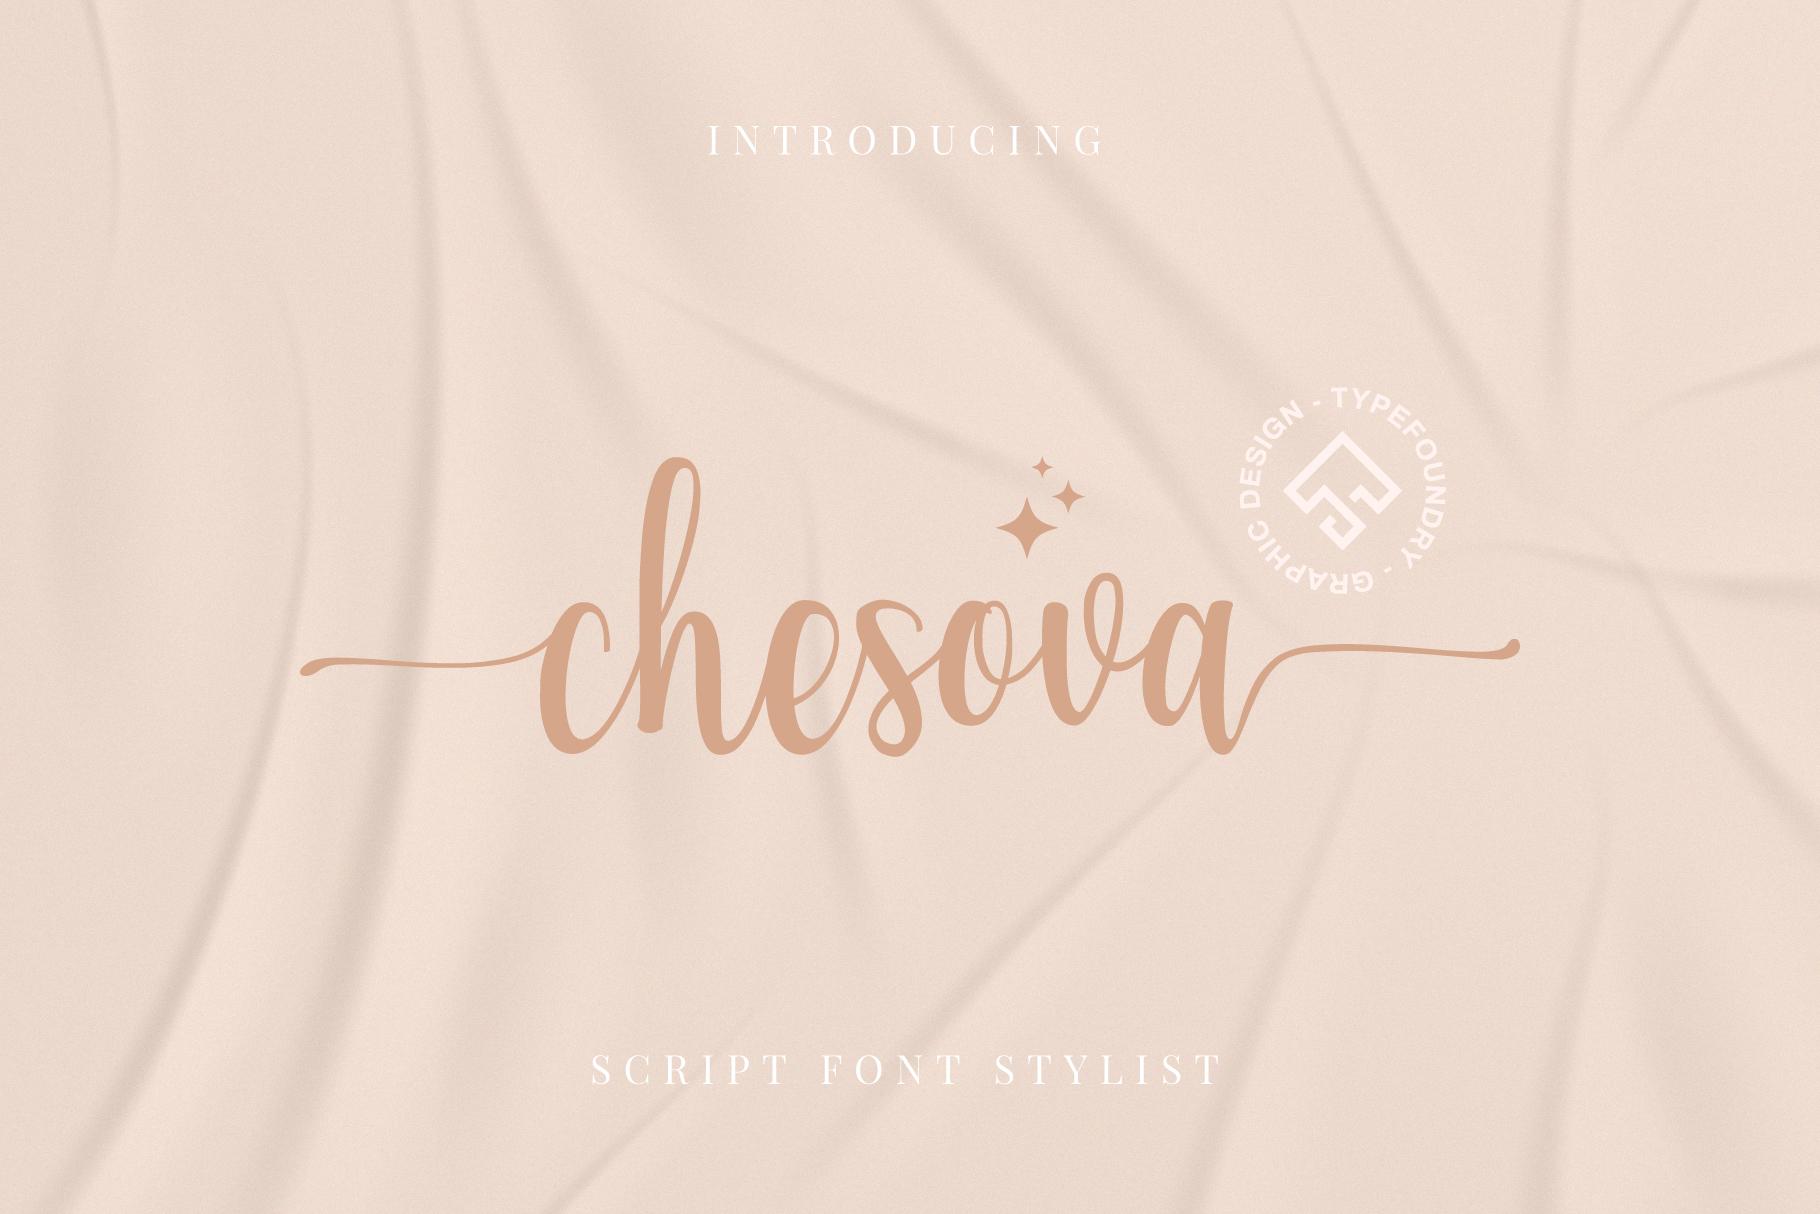 Chesova Font